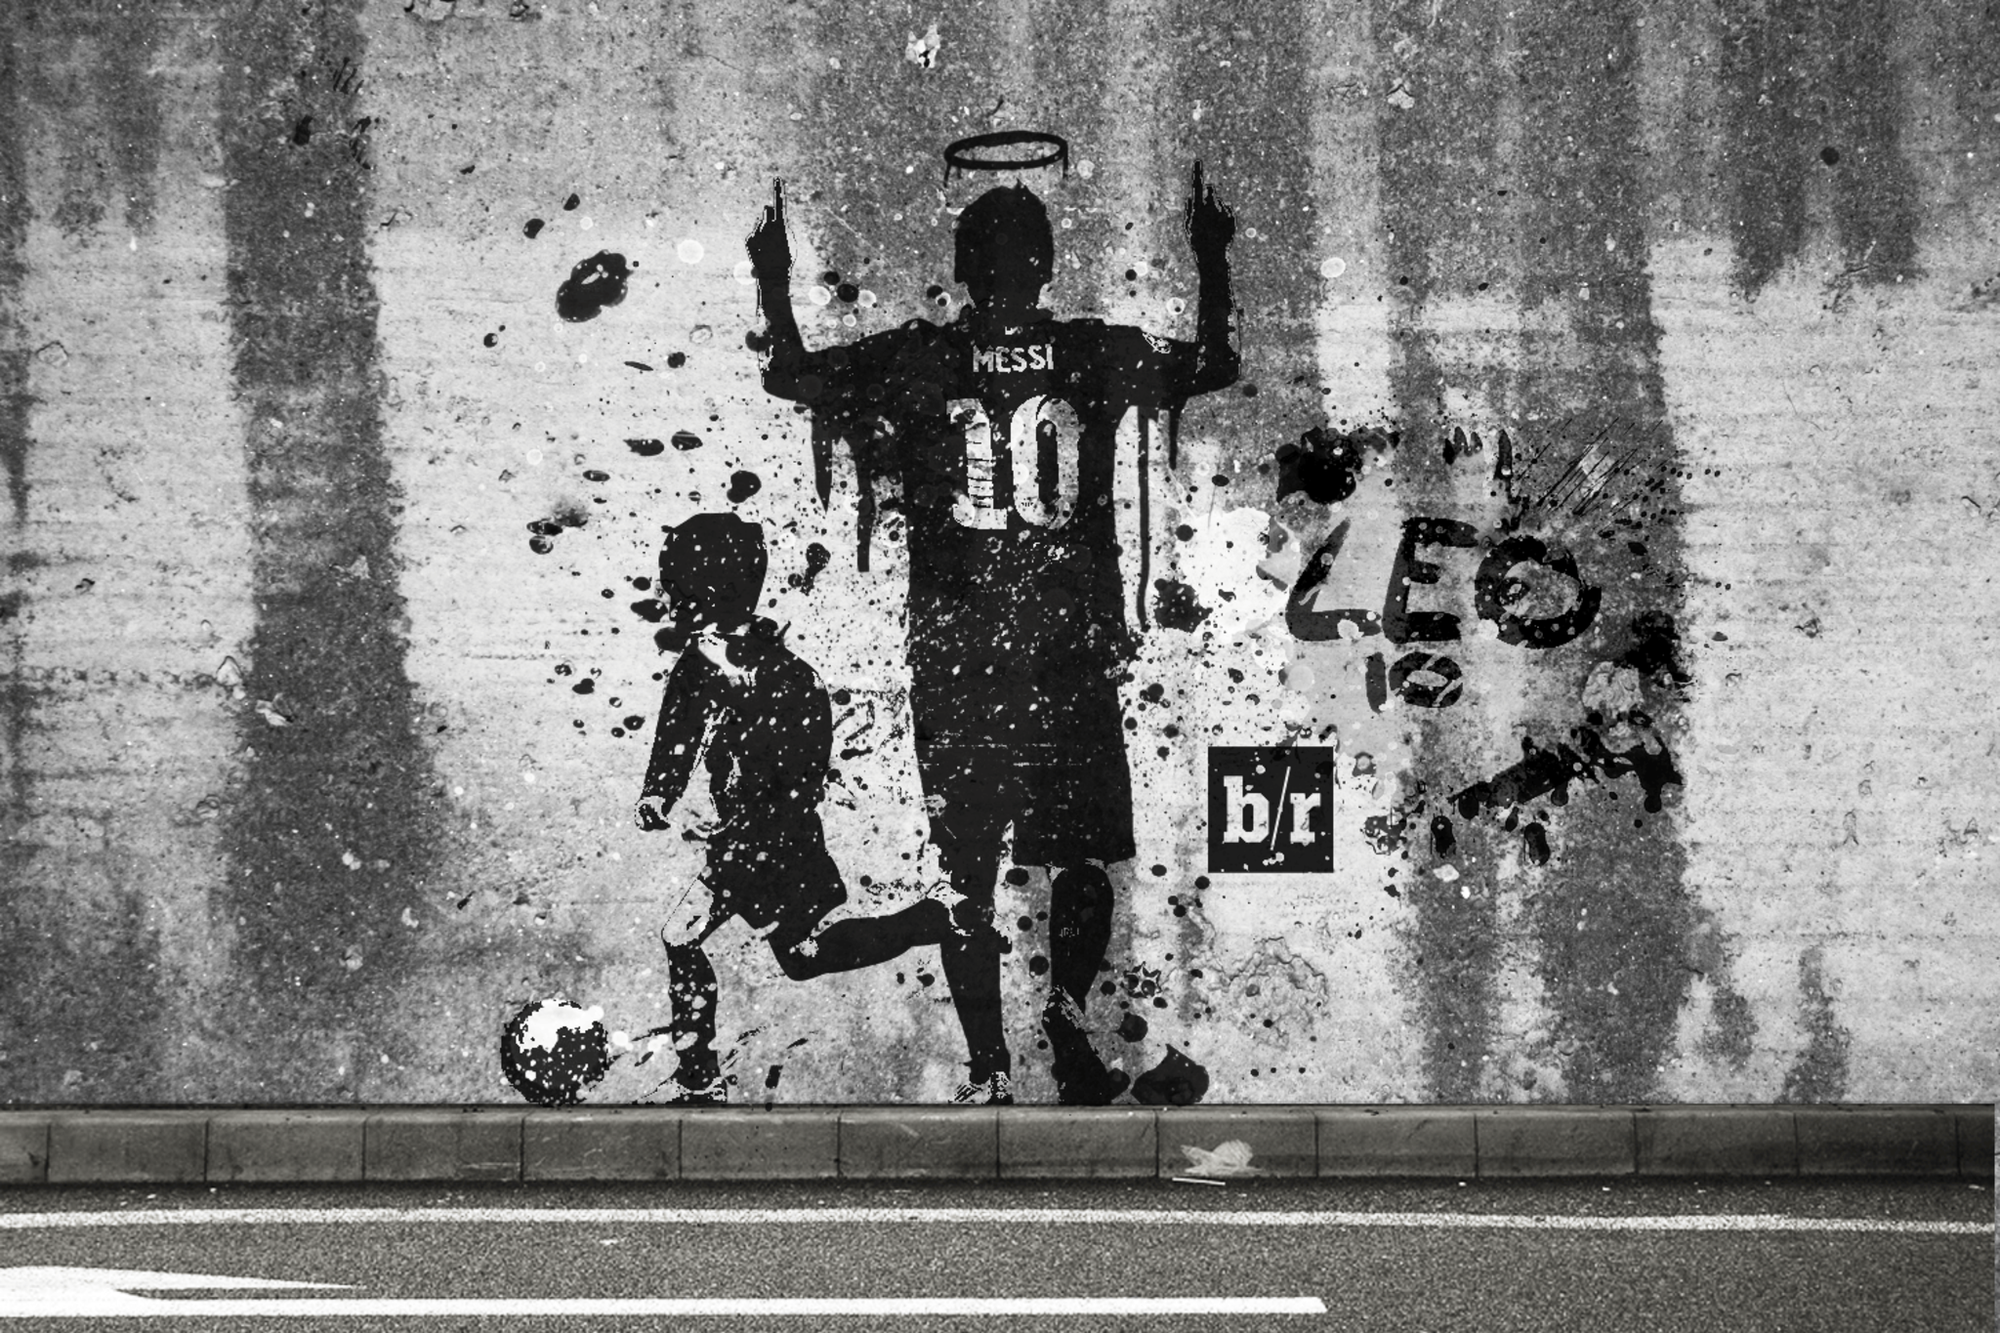 Lionel Messi nâng tầm nghệ thuật bóng đá (Bài 2)